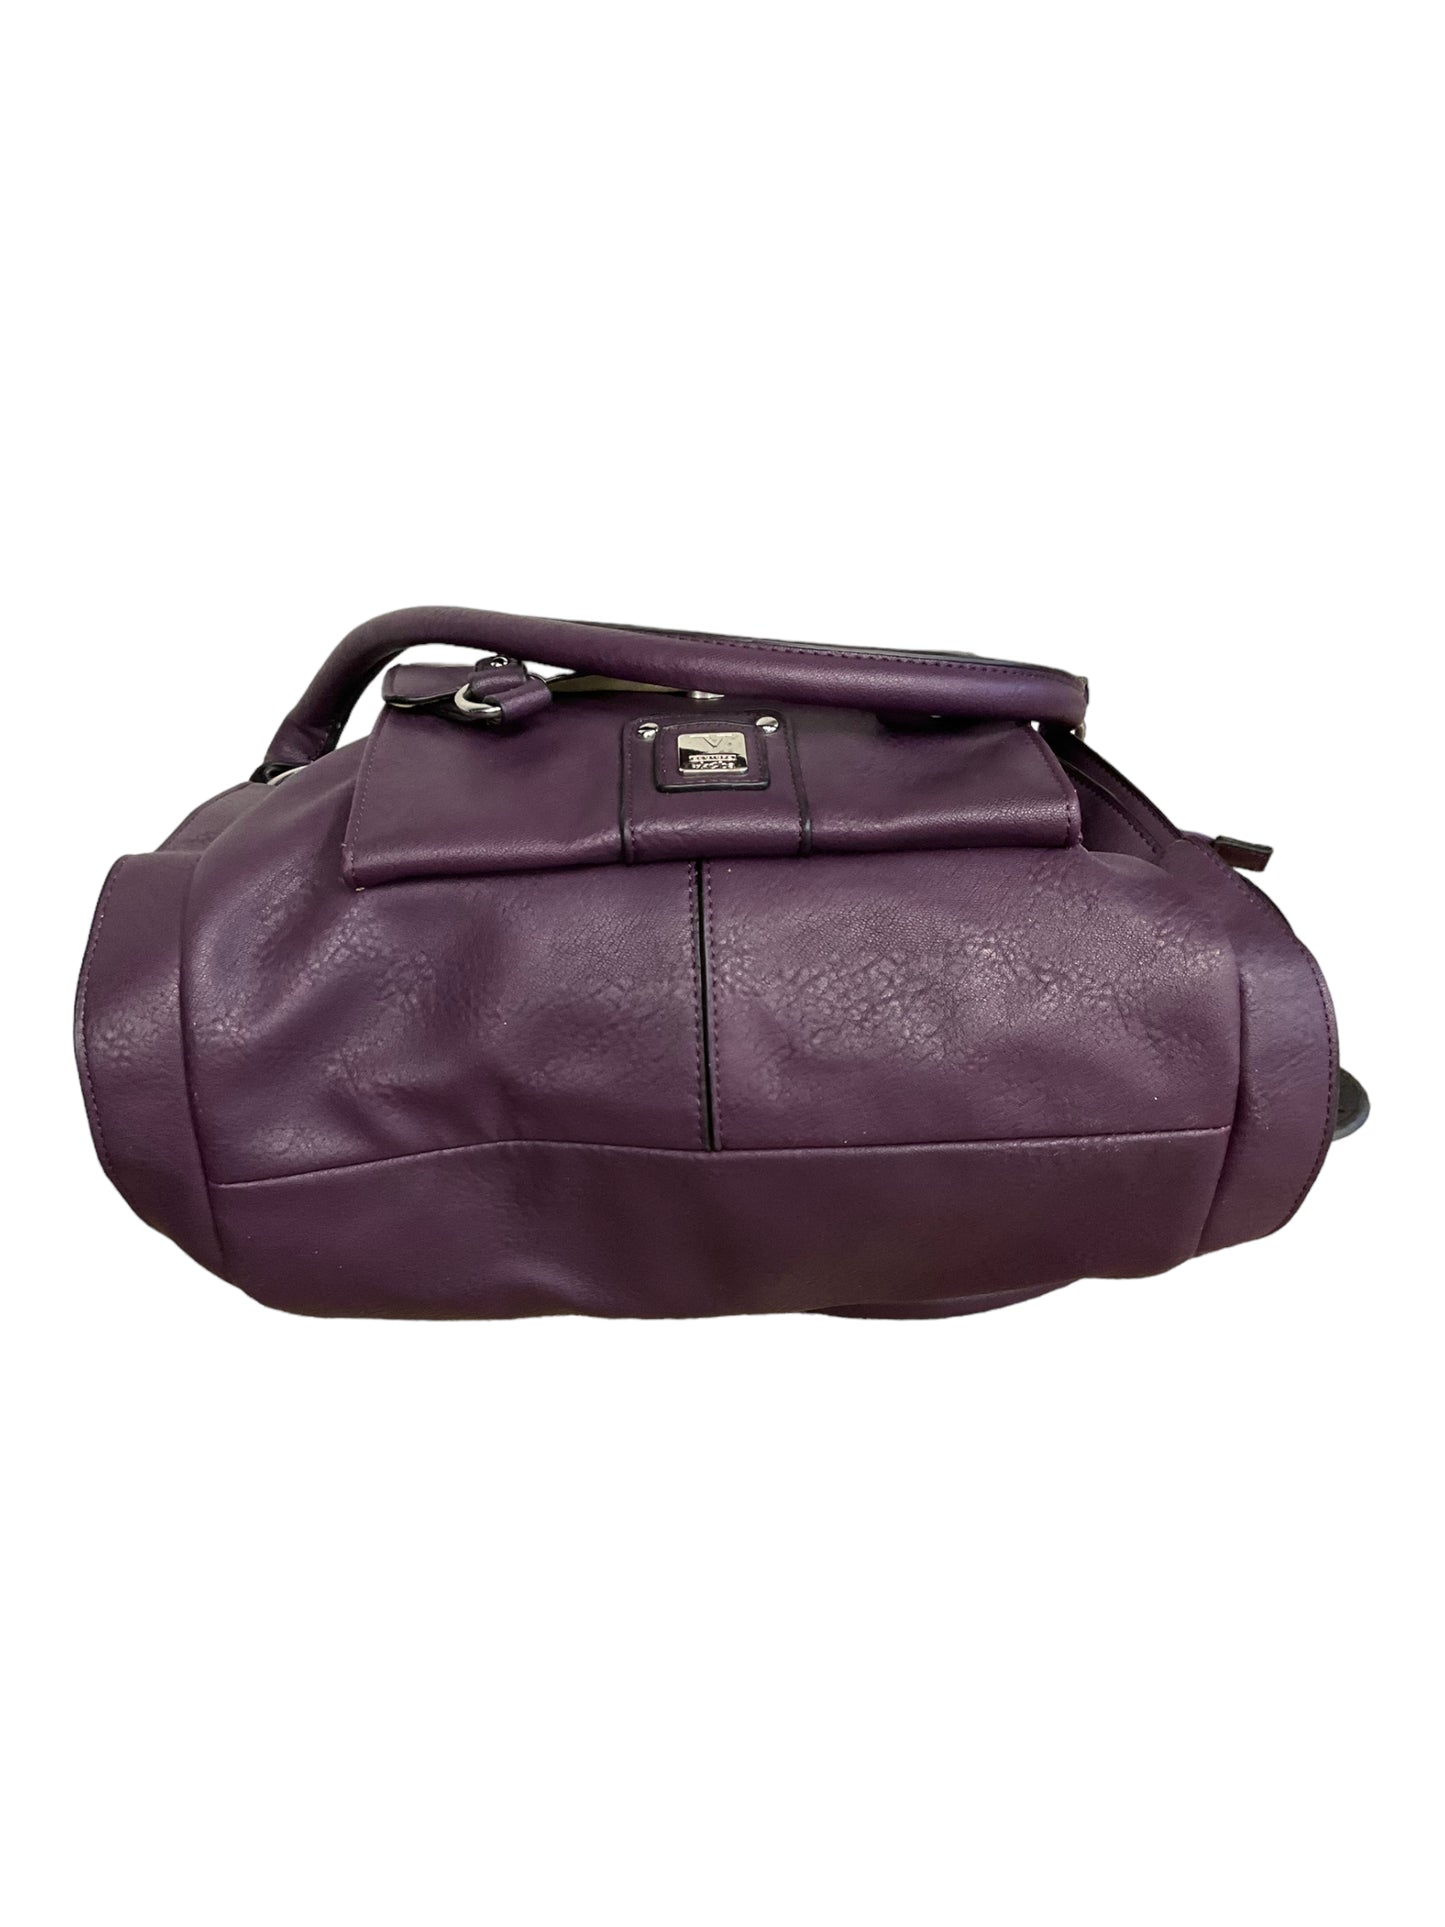 Handbag Leather By Kooba  Size: Large